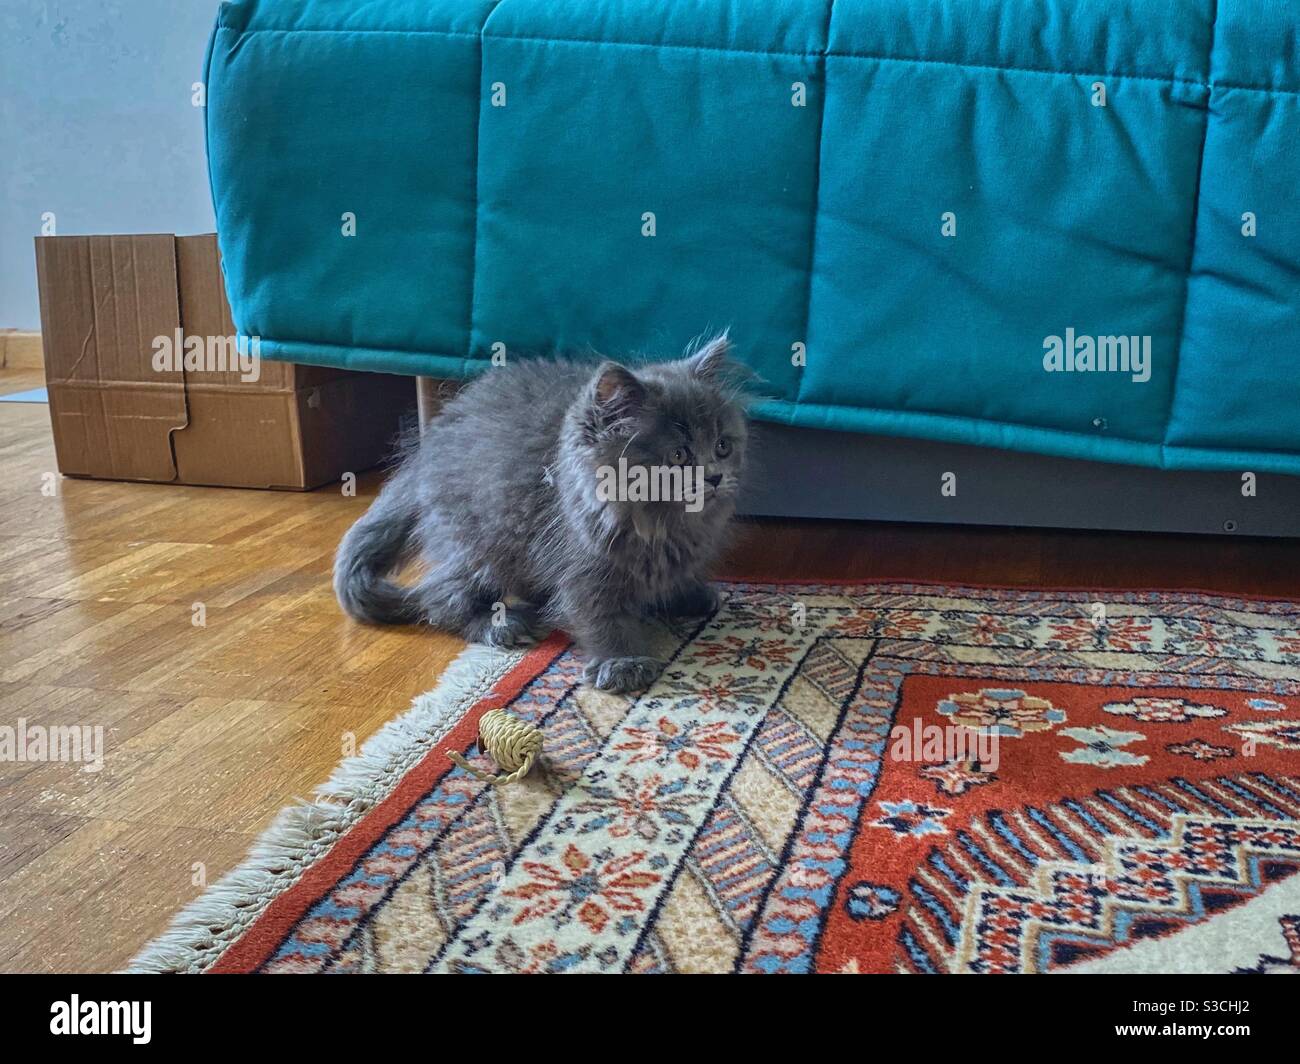 Gatito azul persa de 3 meses con alfombra de colores, sofá y ratón de juguete. Foto de stock